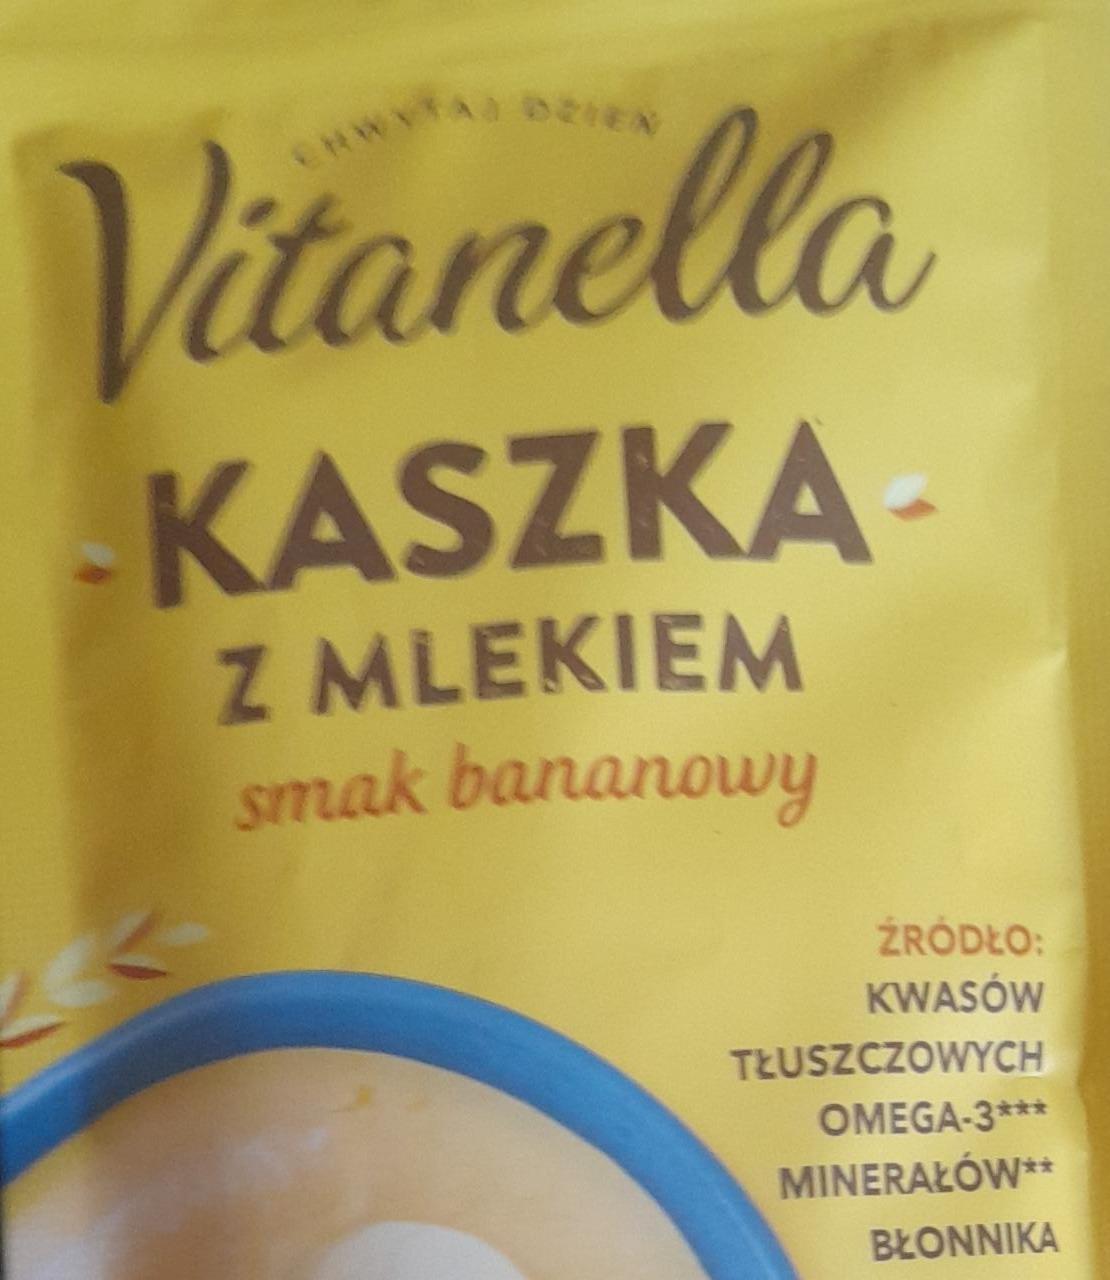 Фото - Каша з молоком з банановим смаком Vitanella